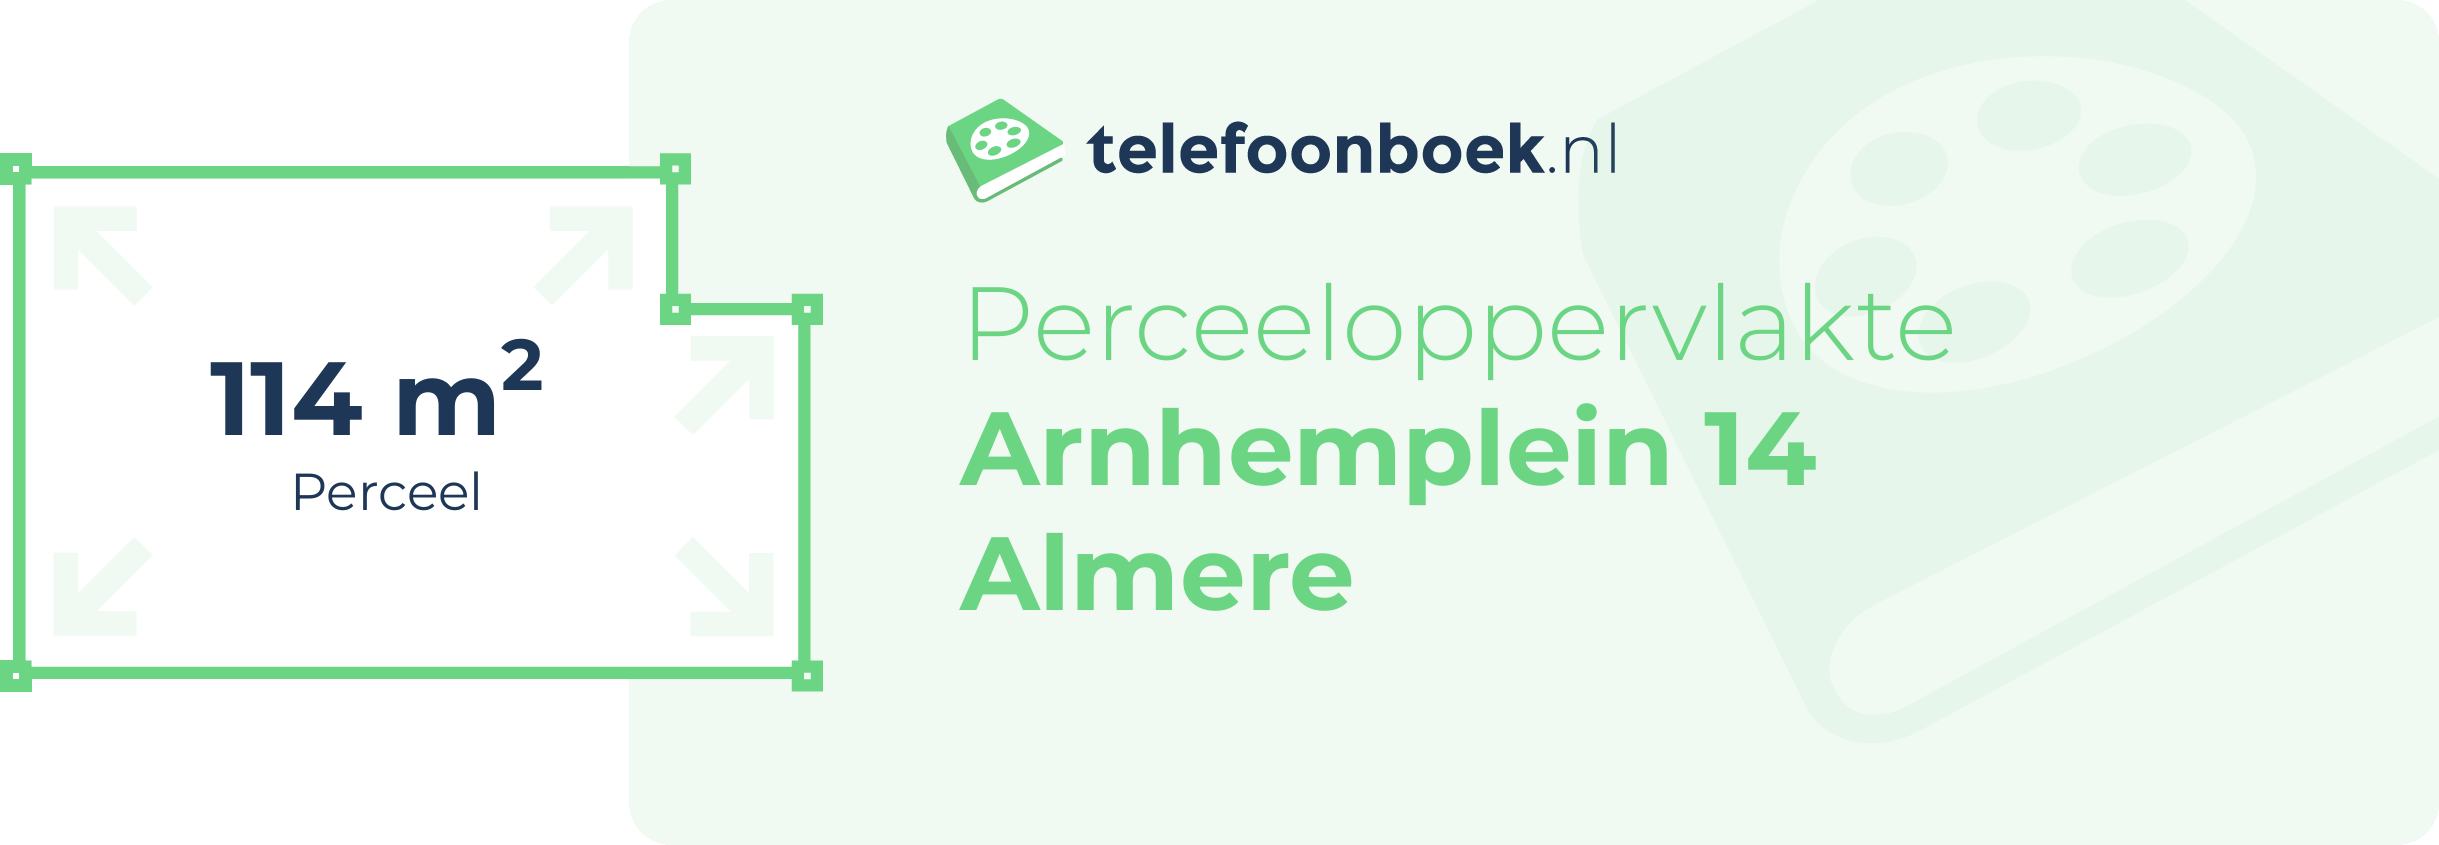 Perceeloppervlakte Arnhemplein 14 Almere